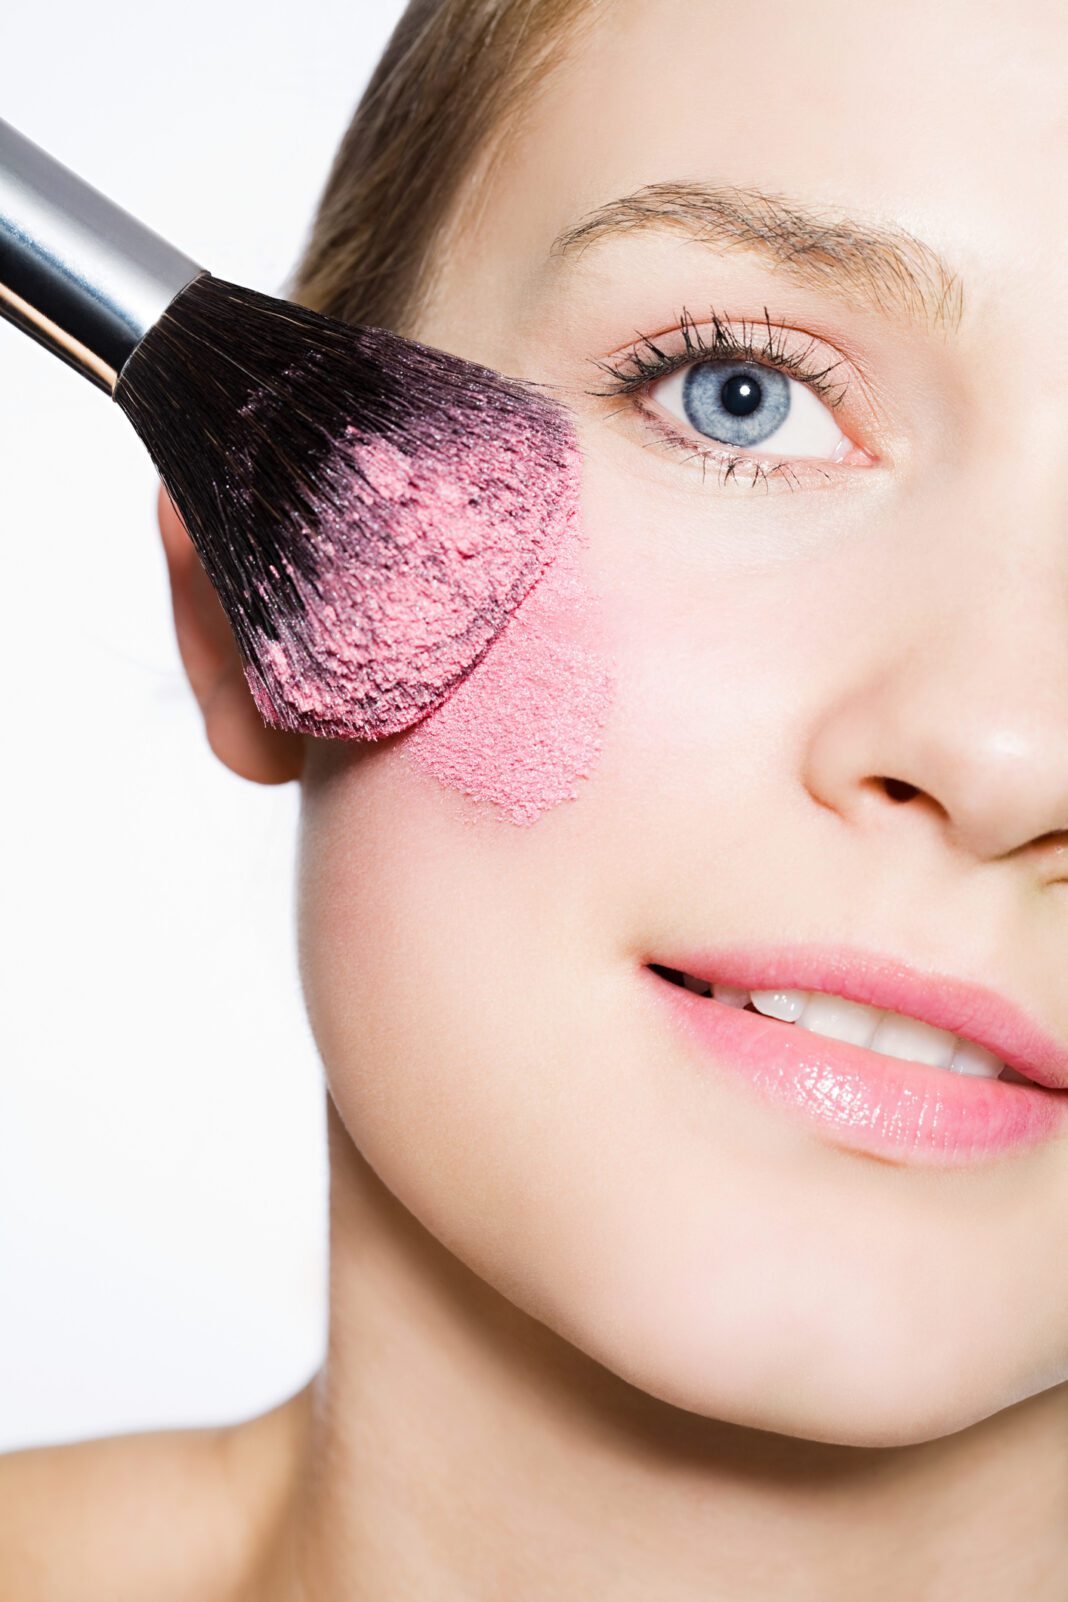 Το λάθος που δεν πρέπει να κάνεις ΠΟΤΕ όταν βάζεις ρουζ σύμφωνα με τους make up artists!